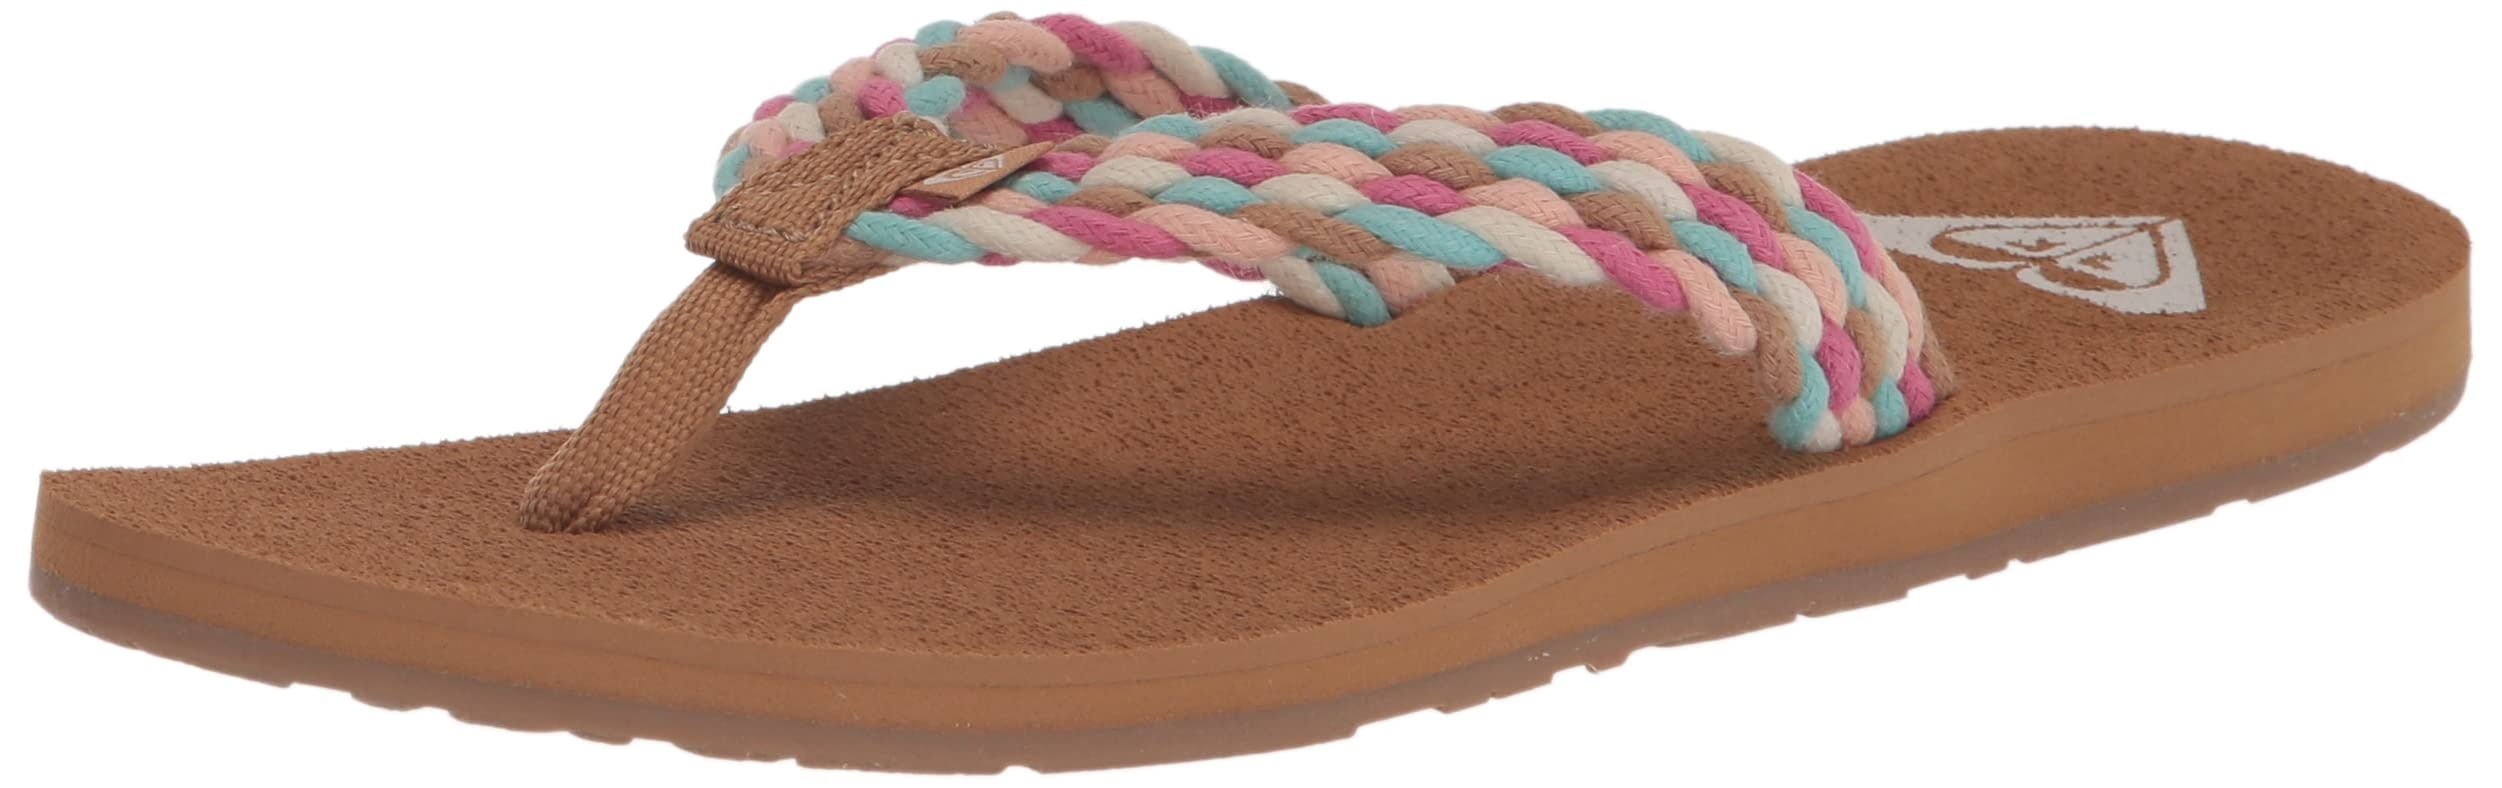 Roxy Damen Porto Sandale Flip Flop Flipflop, Weiß/Pink/Multi, 36 EU